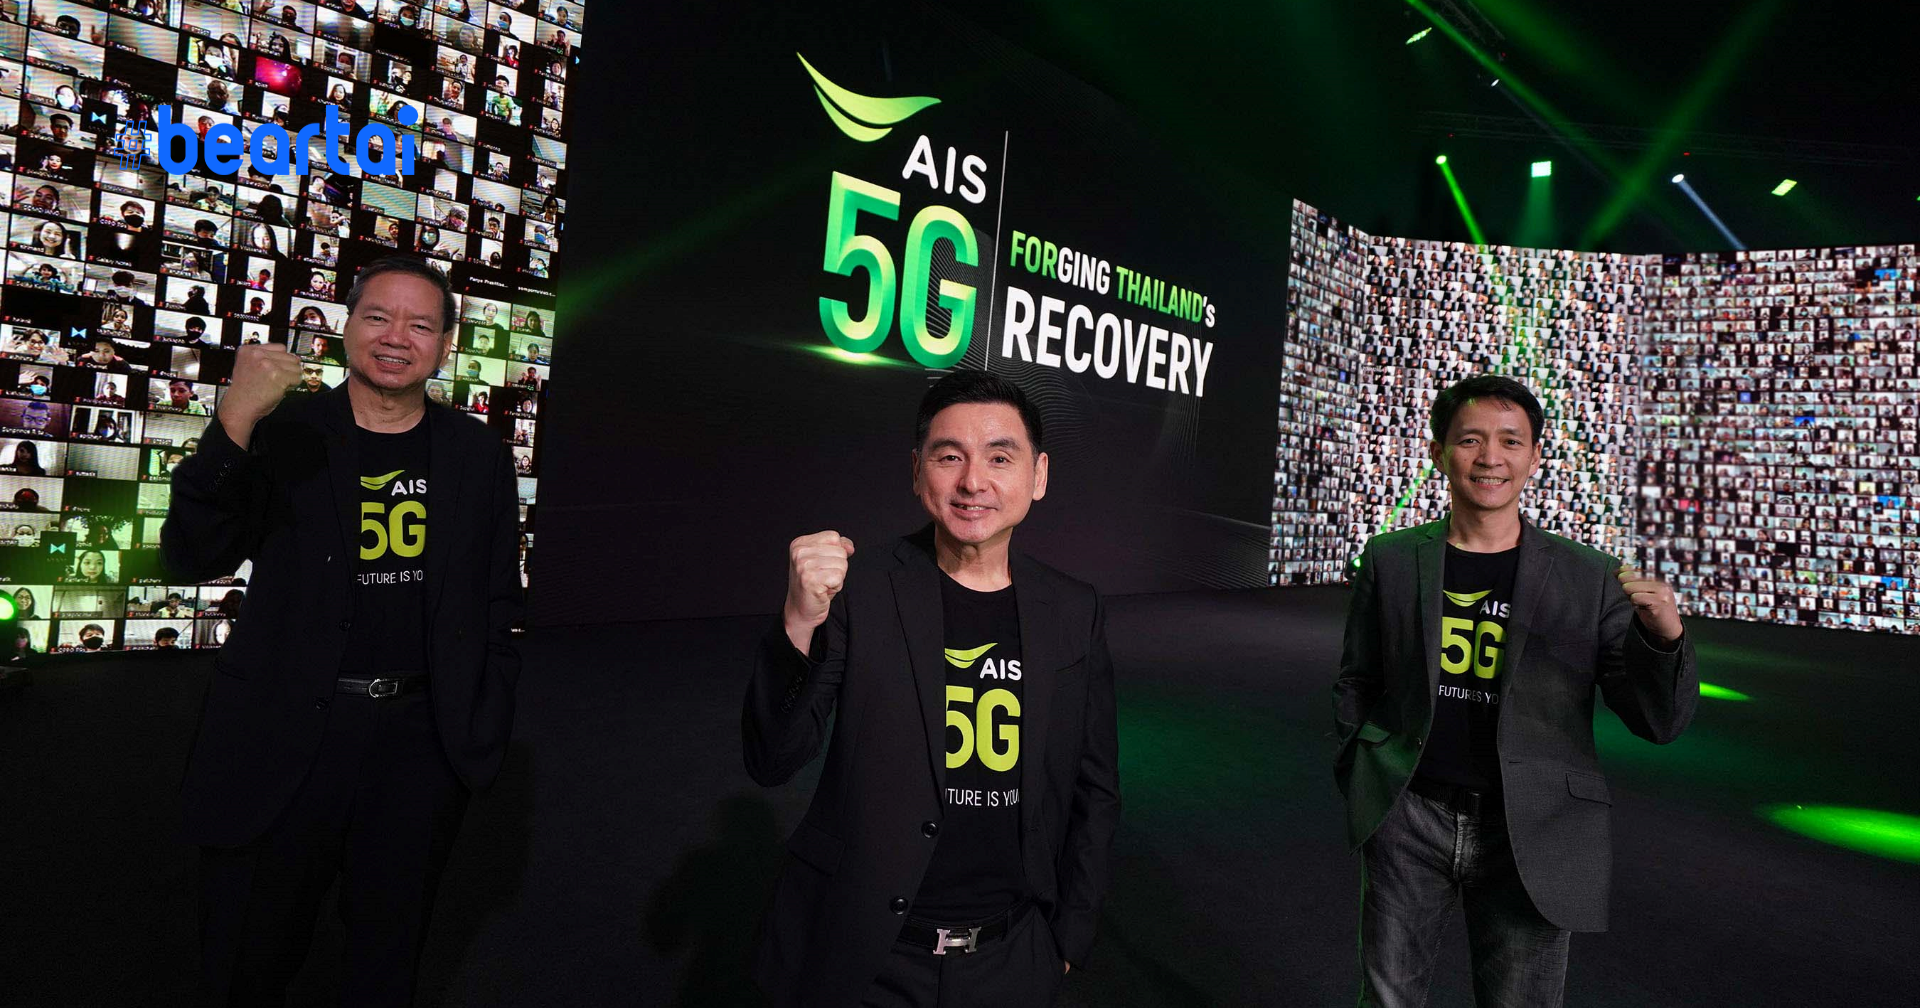 AIS 5G ร่วมฟื้นฟูประเทศไทย เดินหน้า Digital Infrastructure เพื่อการพัฒนาอย่างยั่งยืน